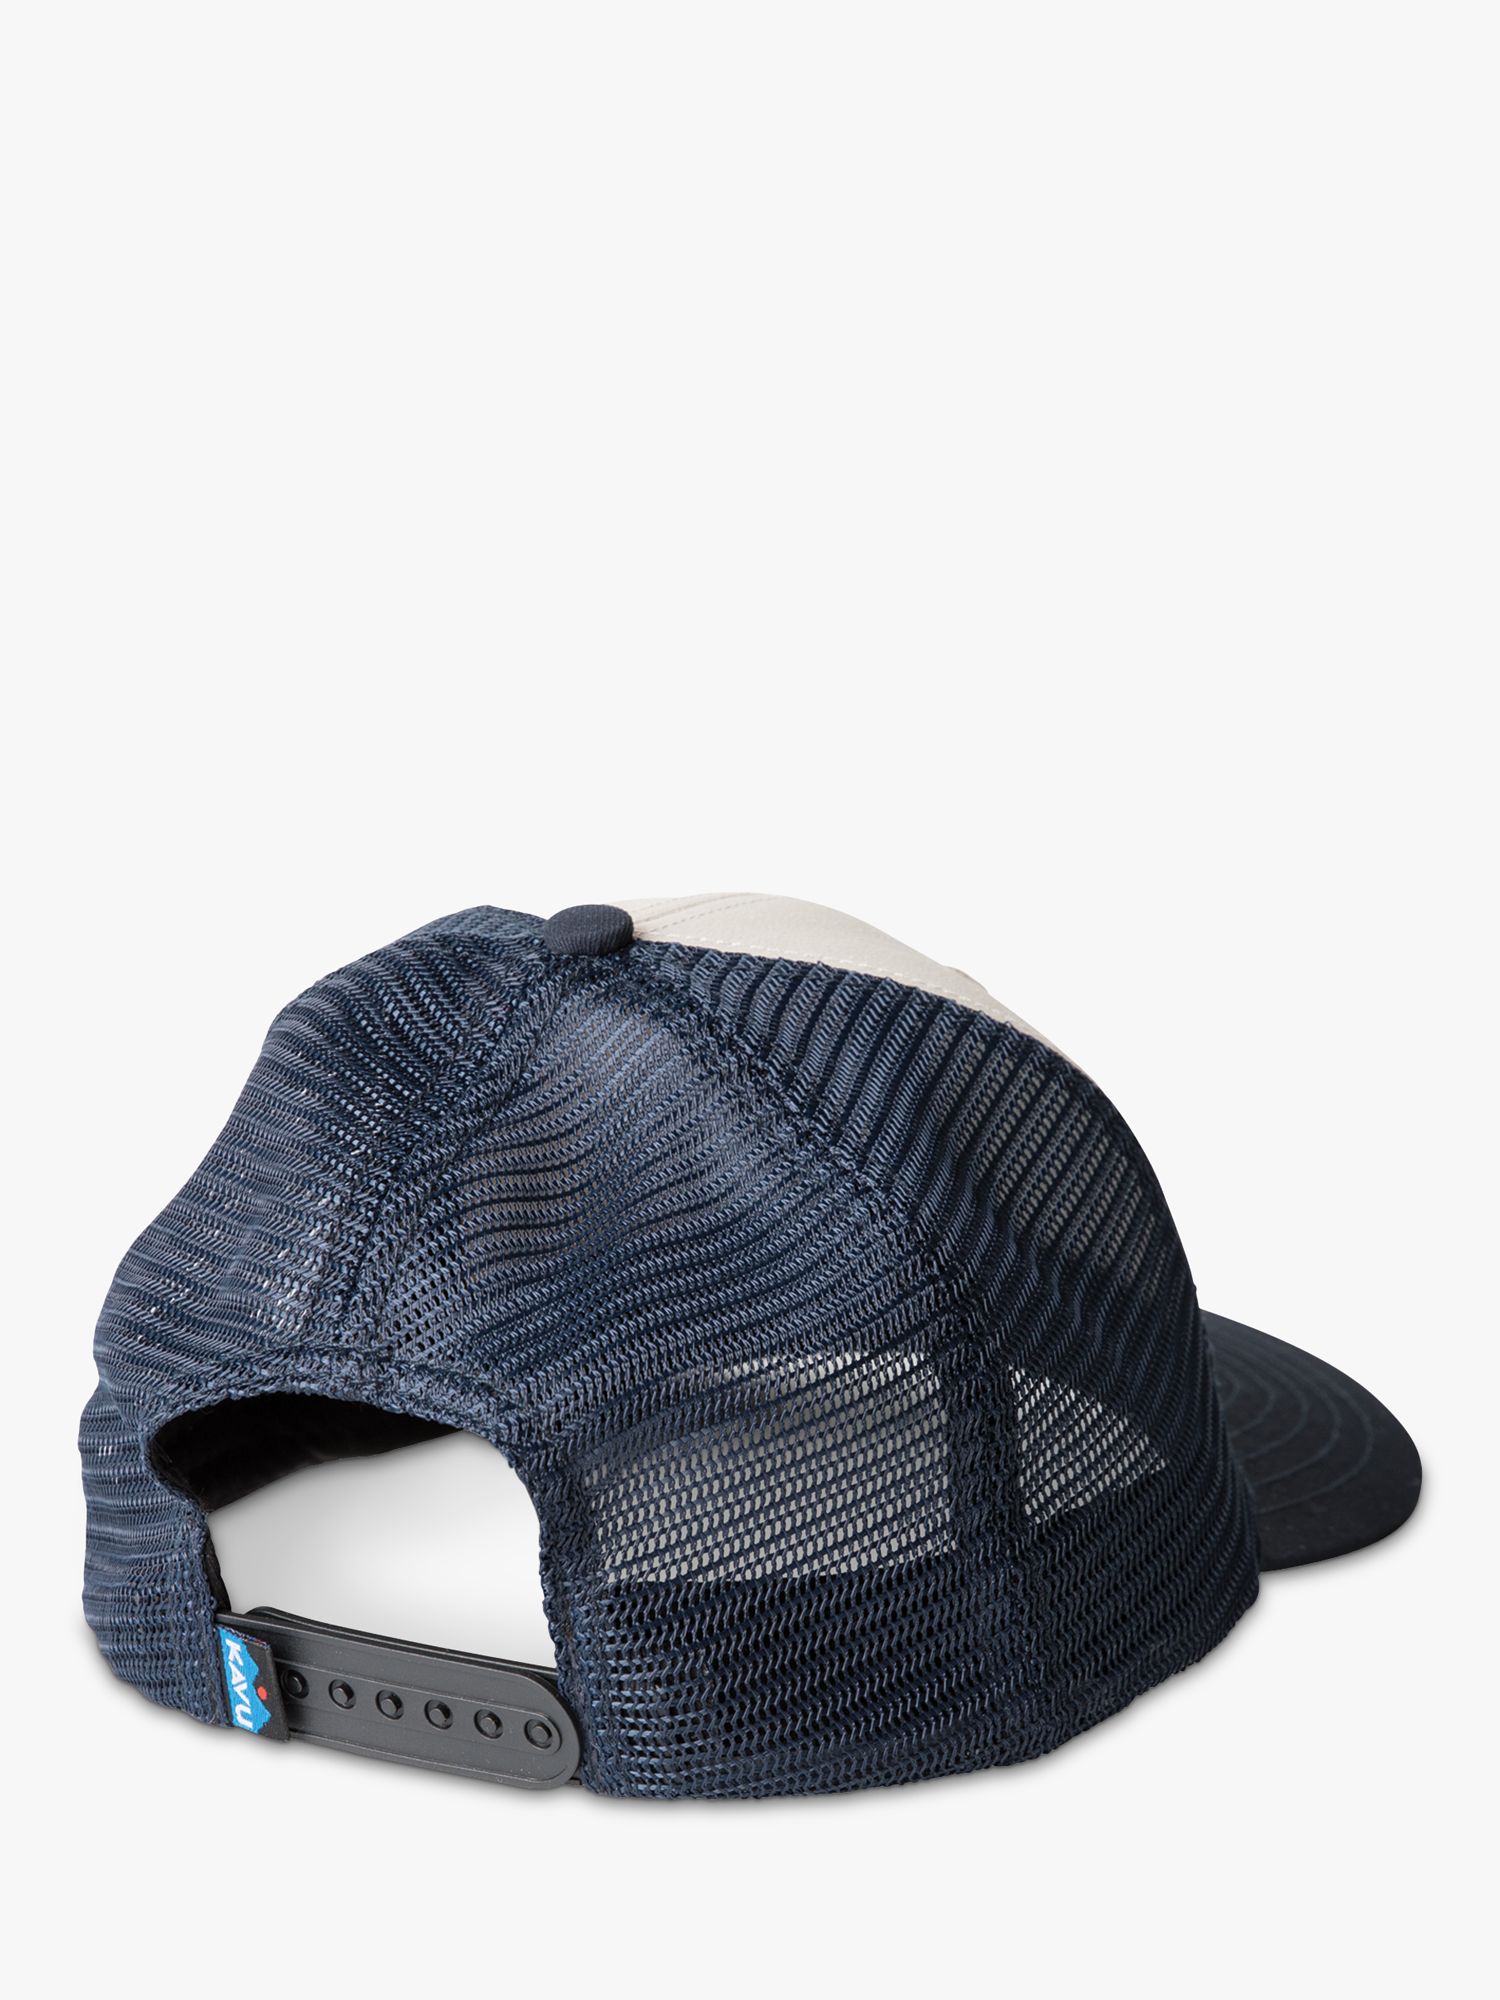 KAVU Above Standard Hat, Blue/Multi, One Size